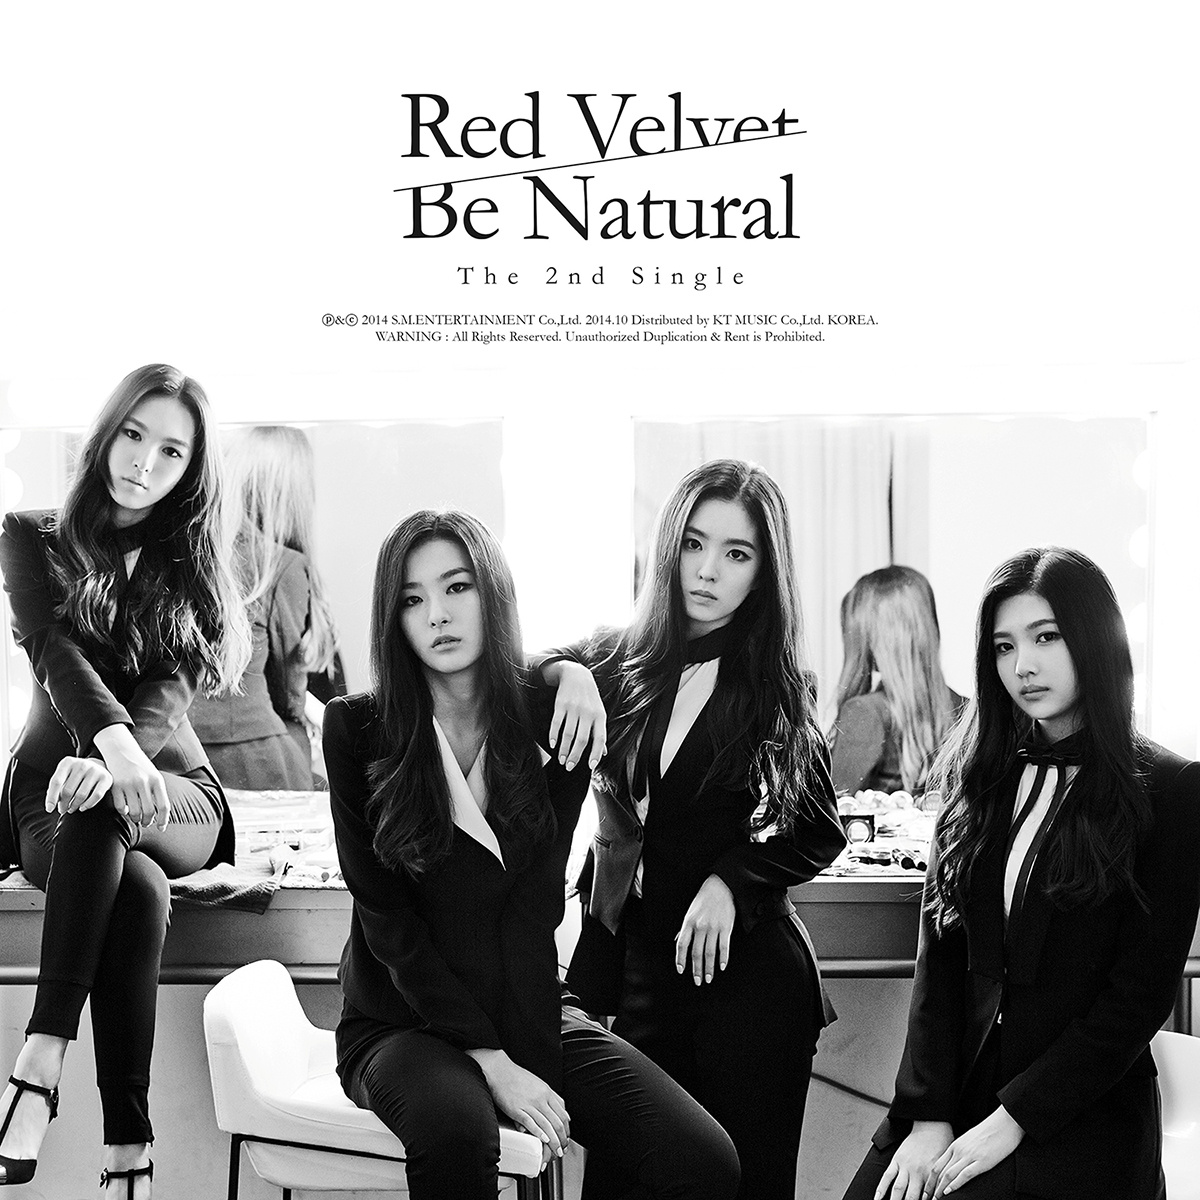 Be Natural(Red Velvet第二張數位單曲)